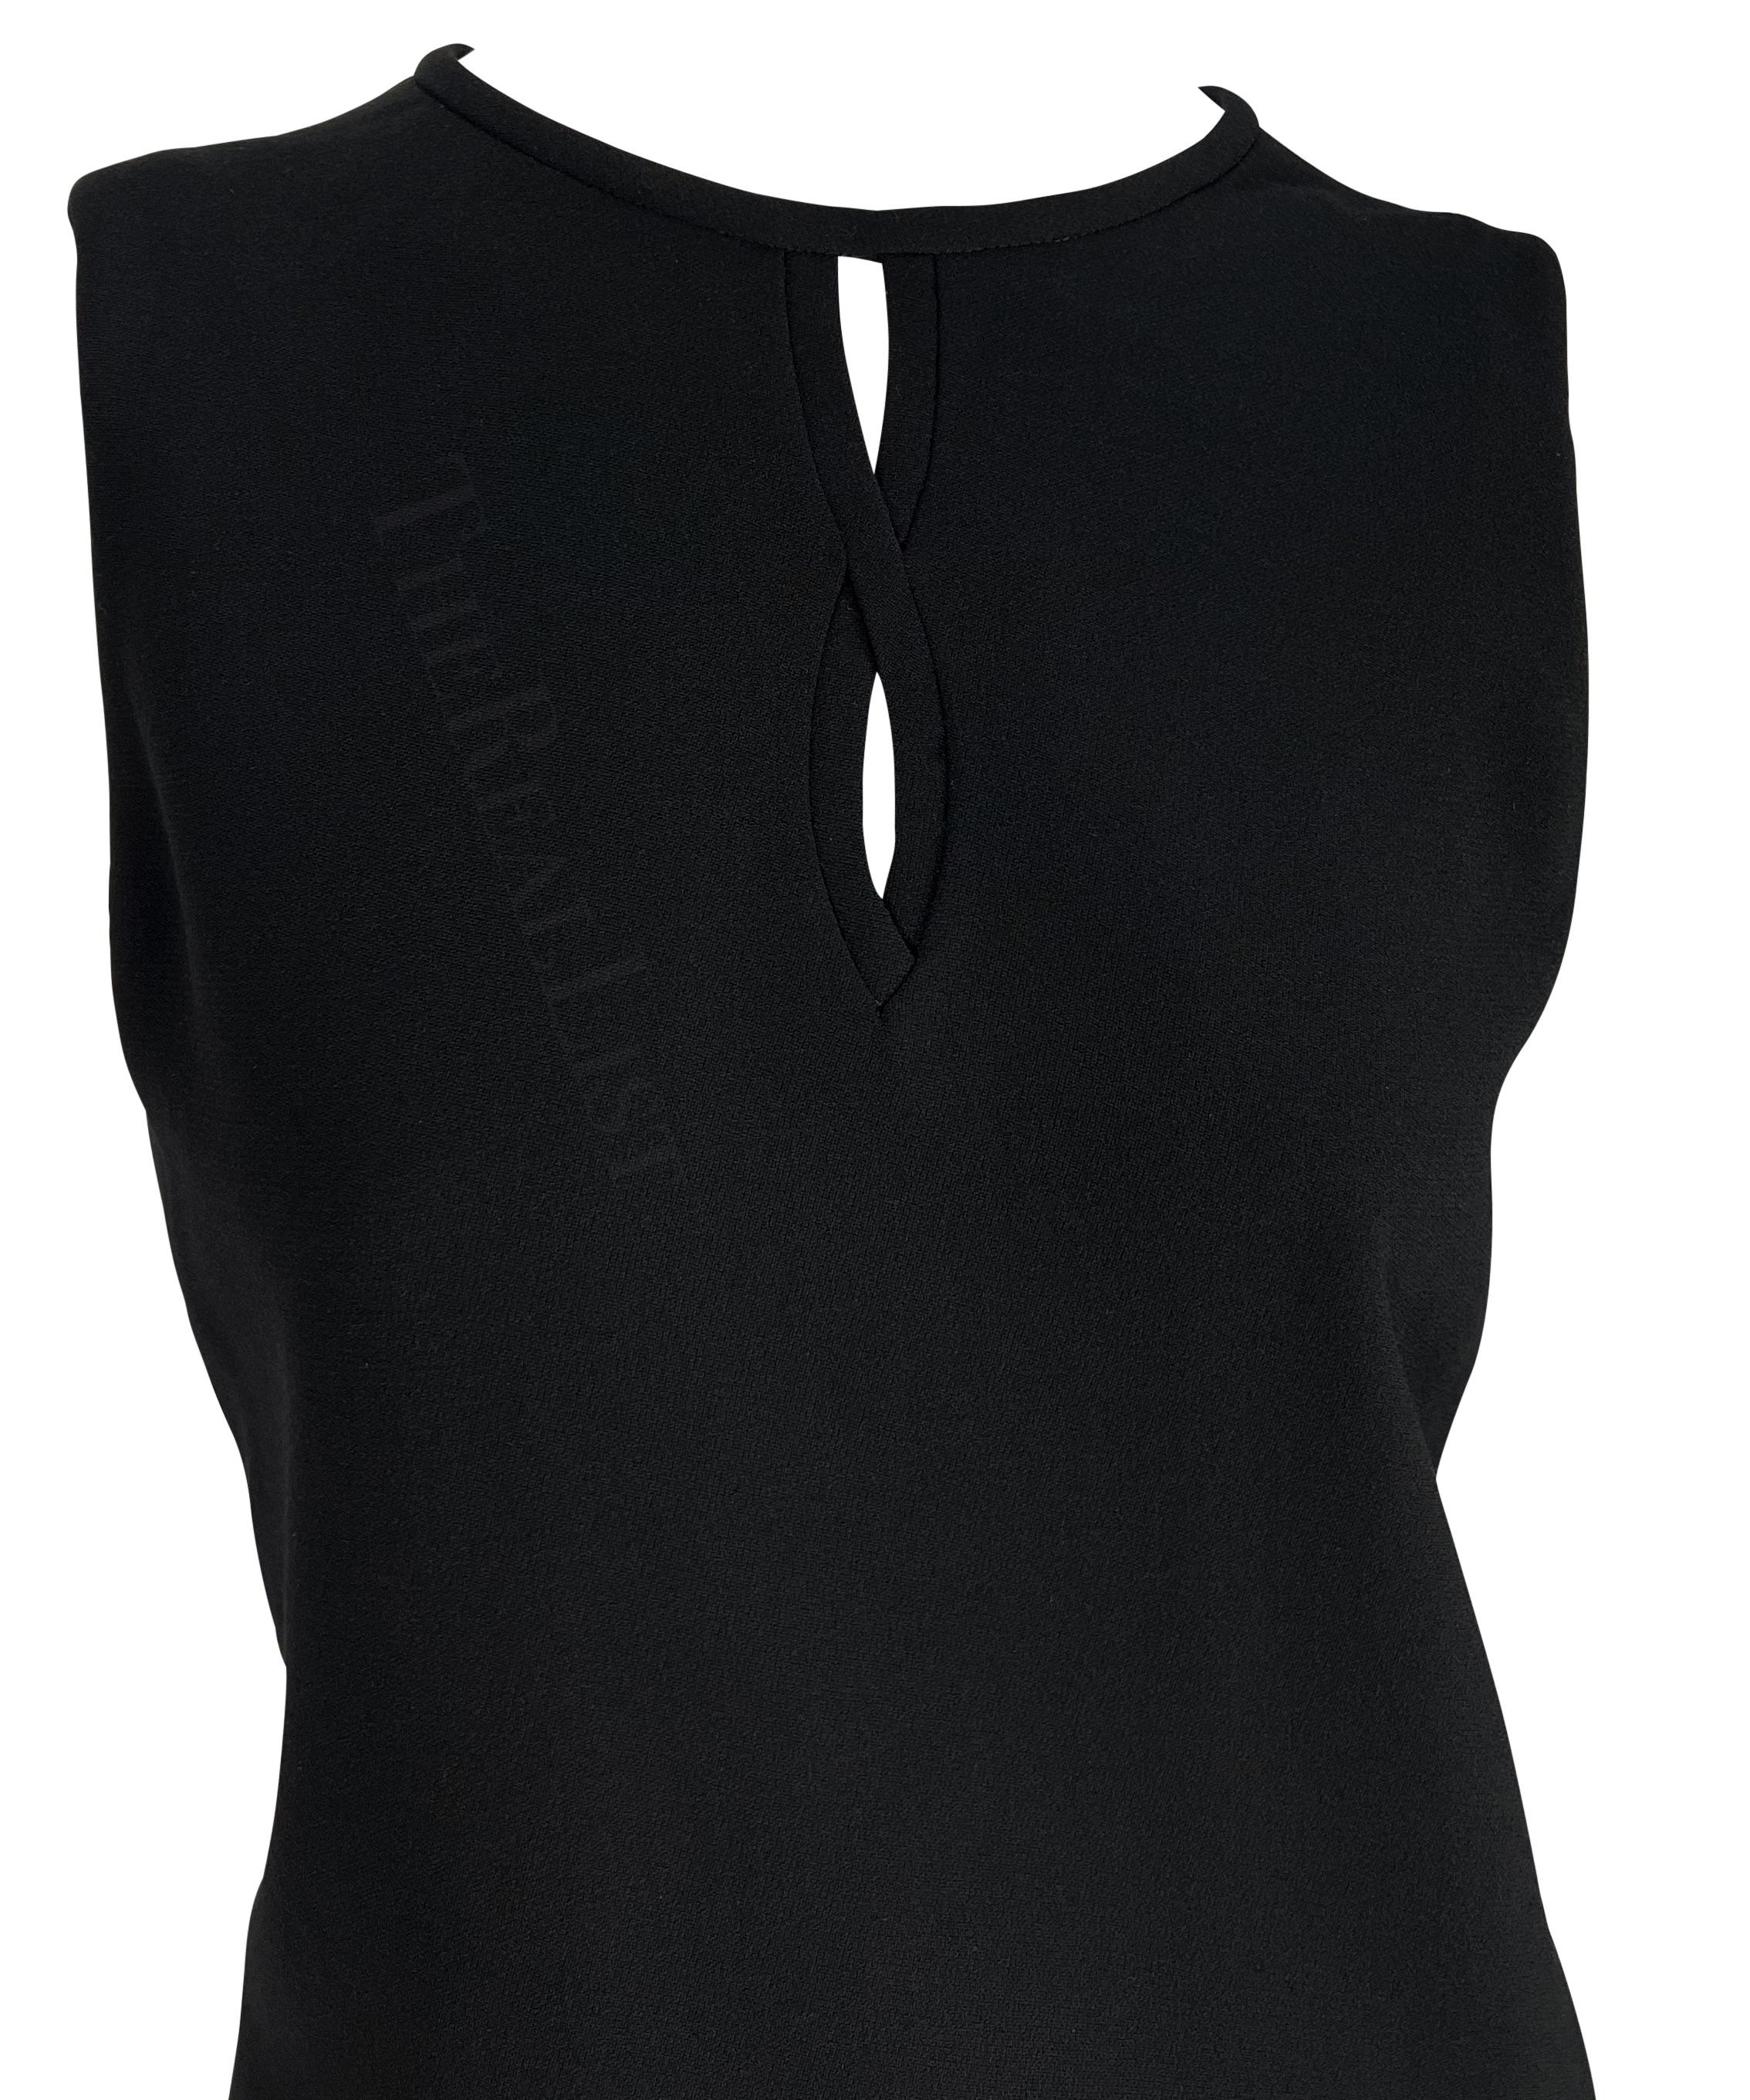 Wir präsentieren ein fabelhaftes schwarzes Gianni Versace Tunikakleid, entworfen von Gianni Versace. Dieses schicke, ärmellose Kleid aus der Herbst/Winter-Kollektion 1997 hat einen Rundhalsausschnitt und Ausschnitte zwischen den Brüsten. Nie zuvor